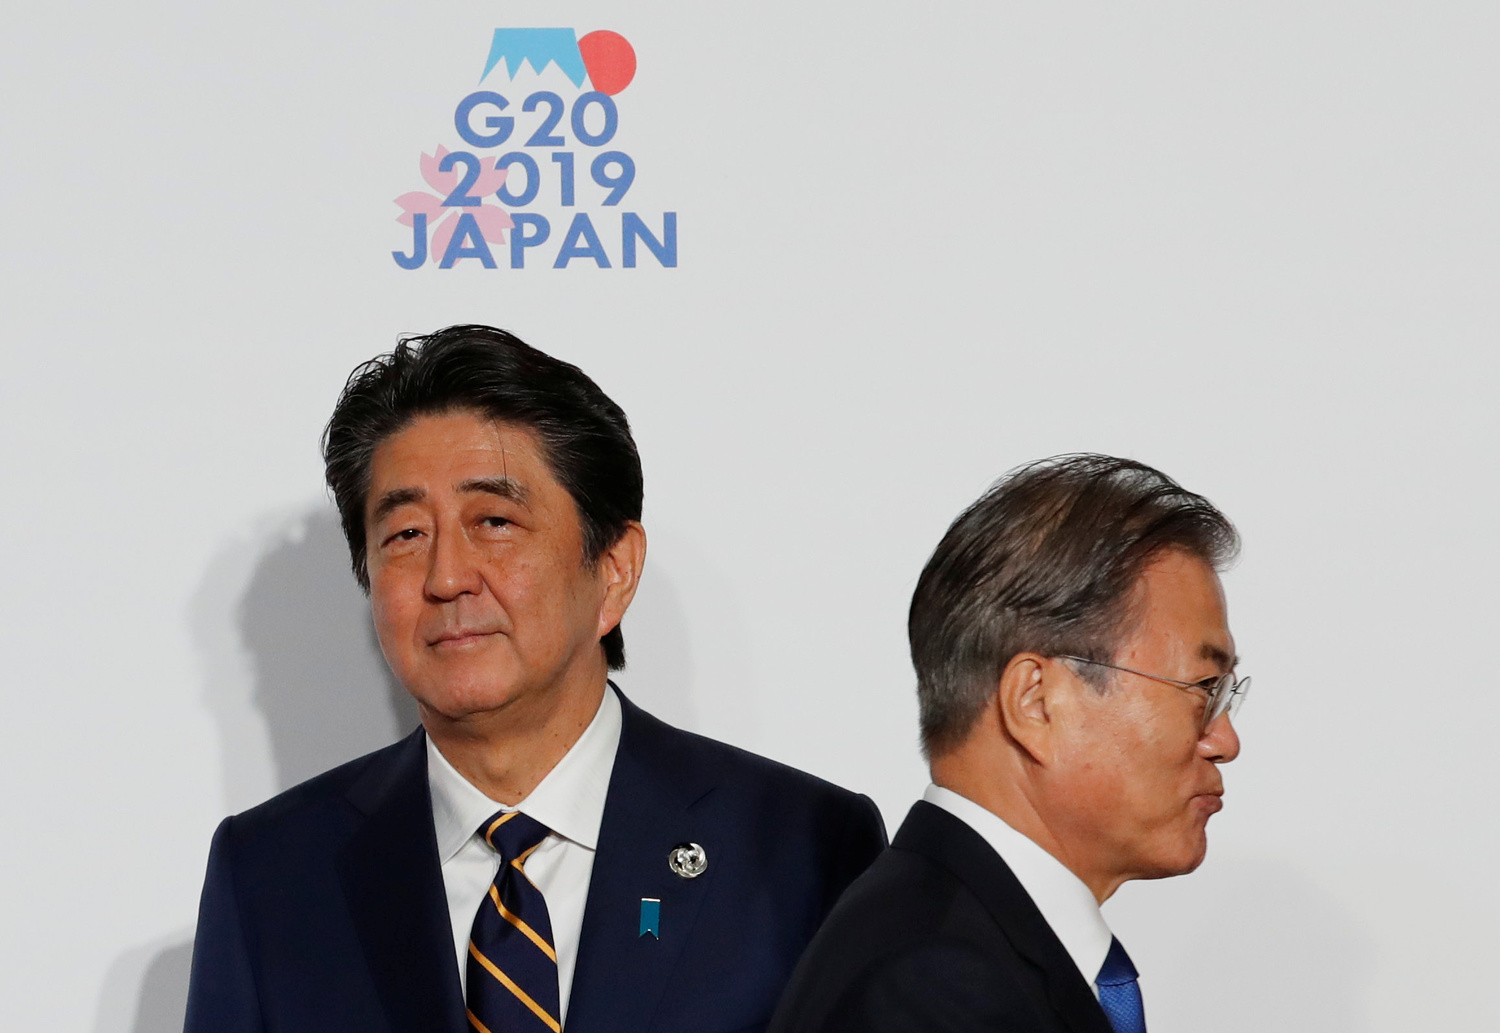 Il Presidente sudcoreano Moon Jae-In accolto dal Primo Ministro giapponese Shinzo Abe al vertice del G20 a Osaka, Giappone, 28 giugno 2019. REUTERS/Kim Kyung-Hoon